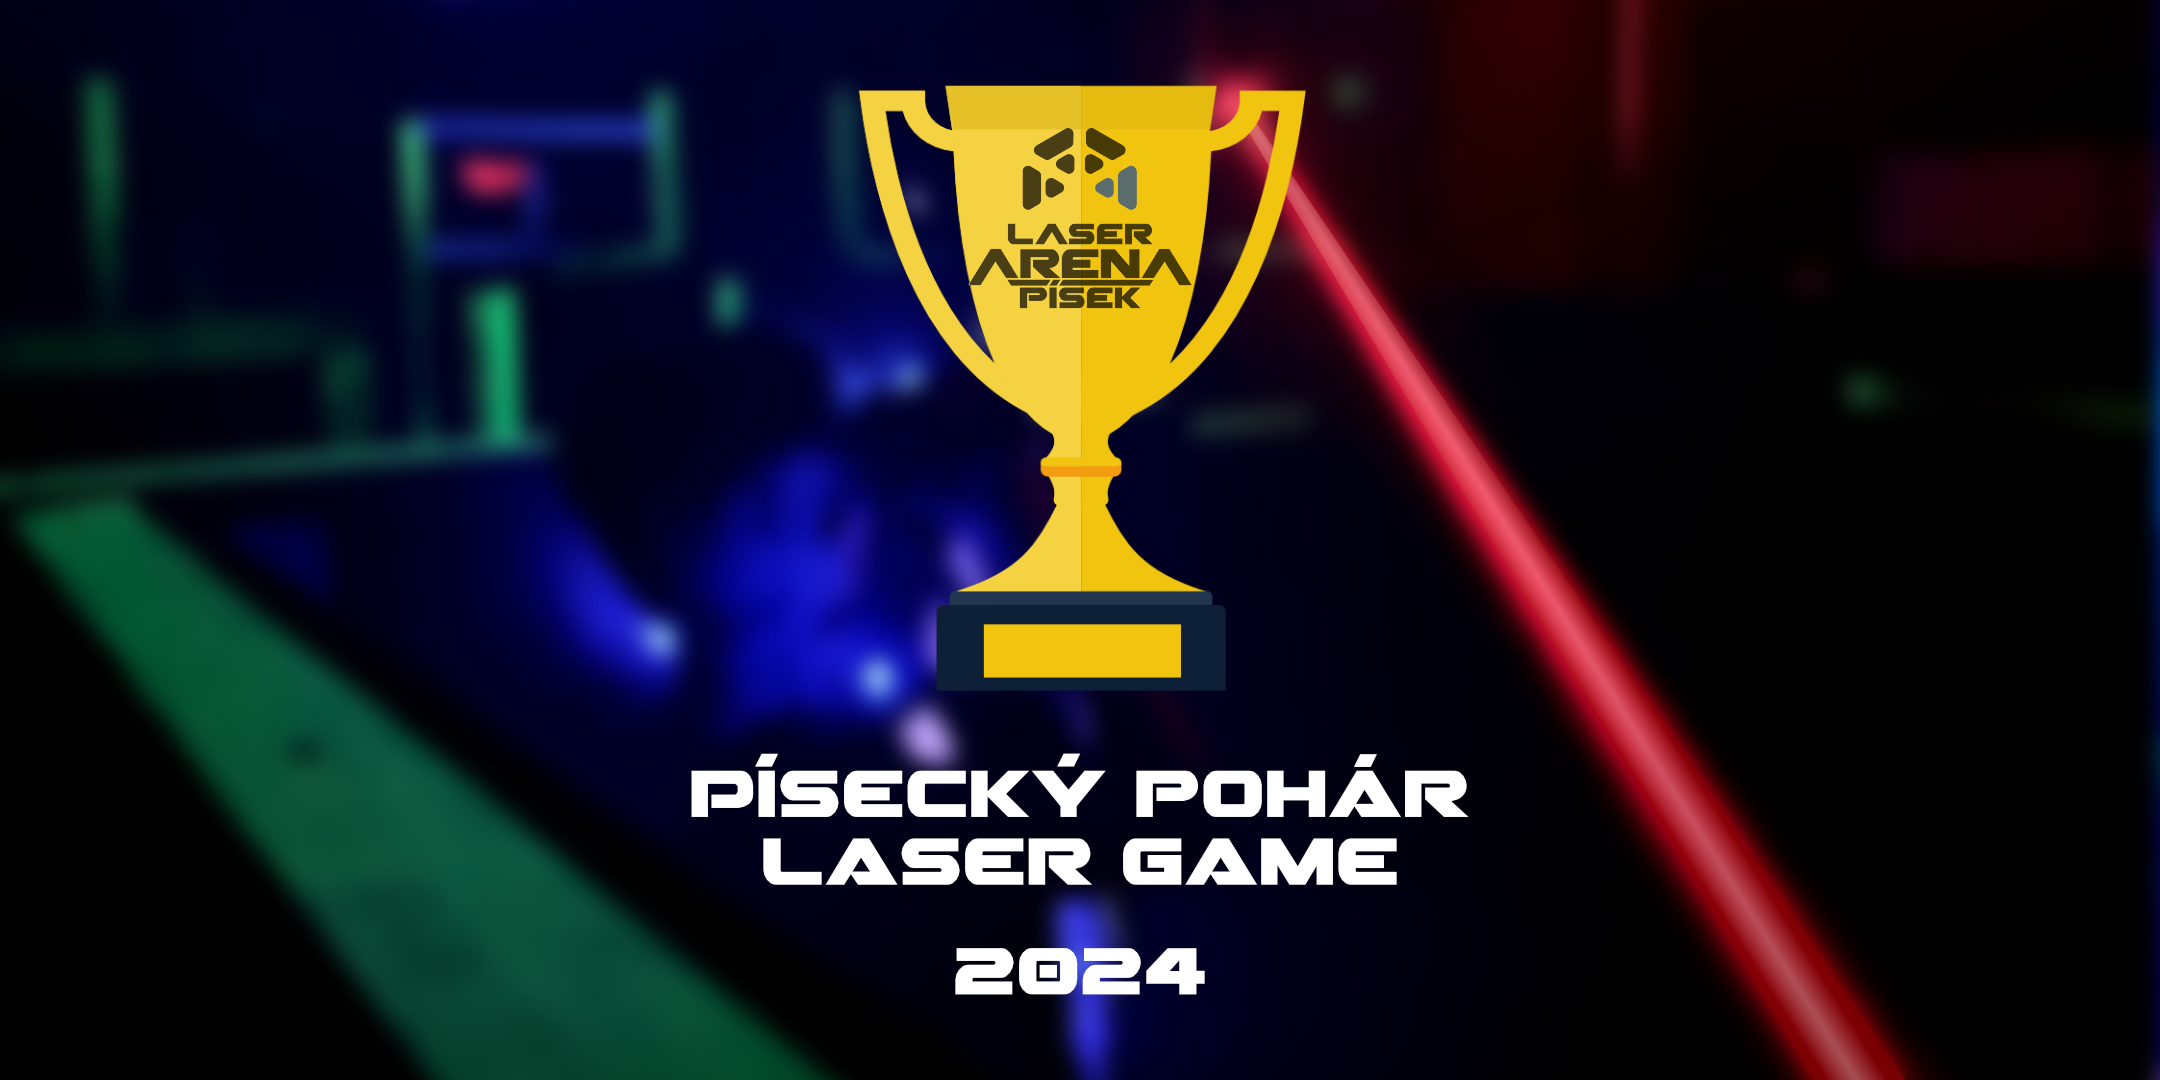 Písecký pohár laser game 2024